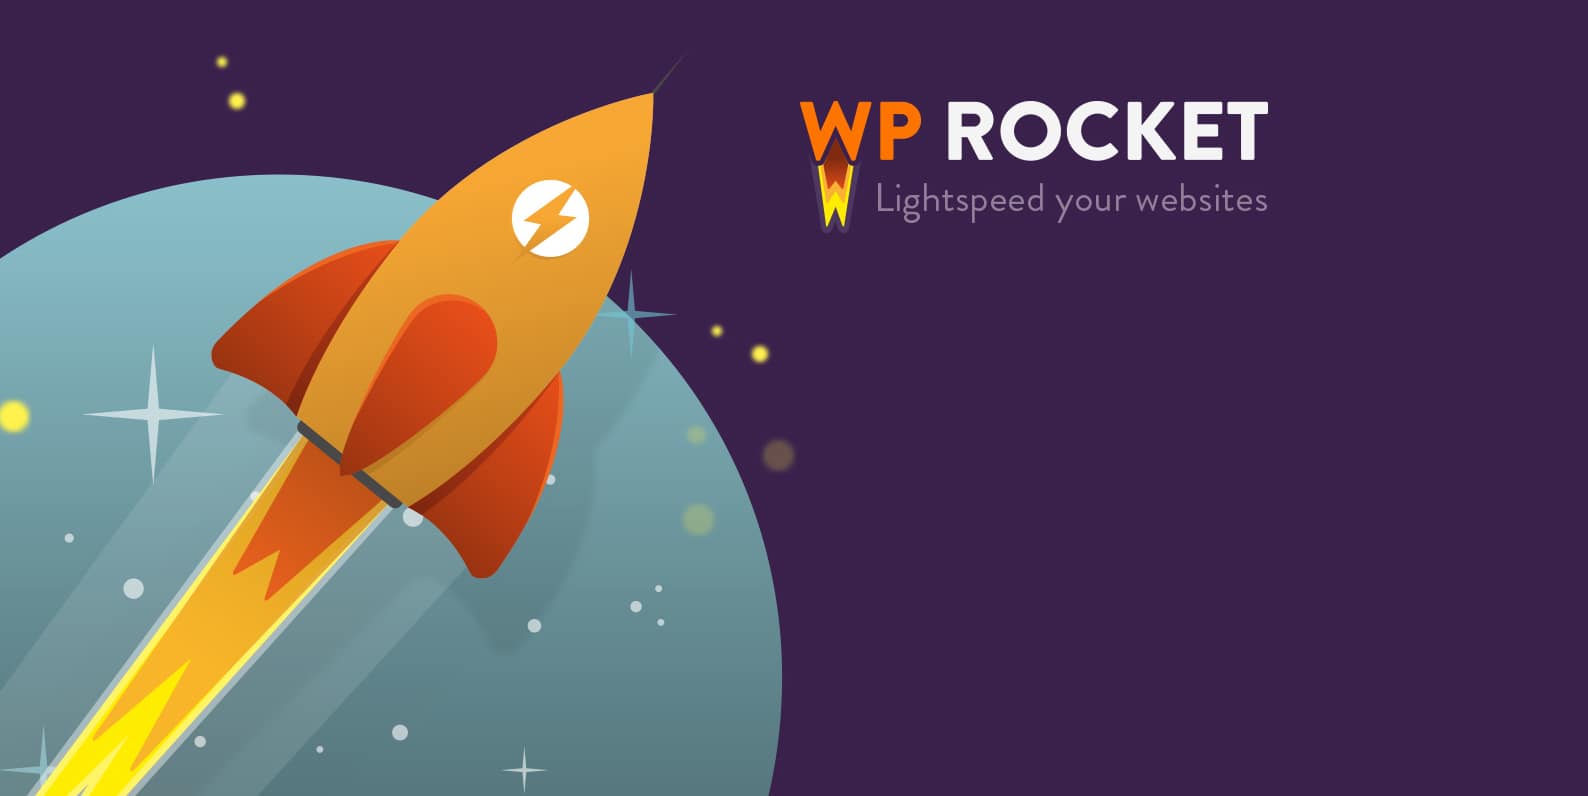 افزونه WP Rocket | افزونه کش وردپرس | بهینه سازی و افزایش سرعت وردپرس